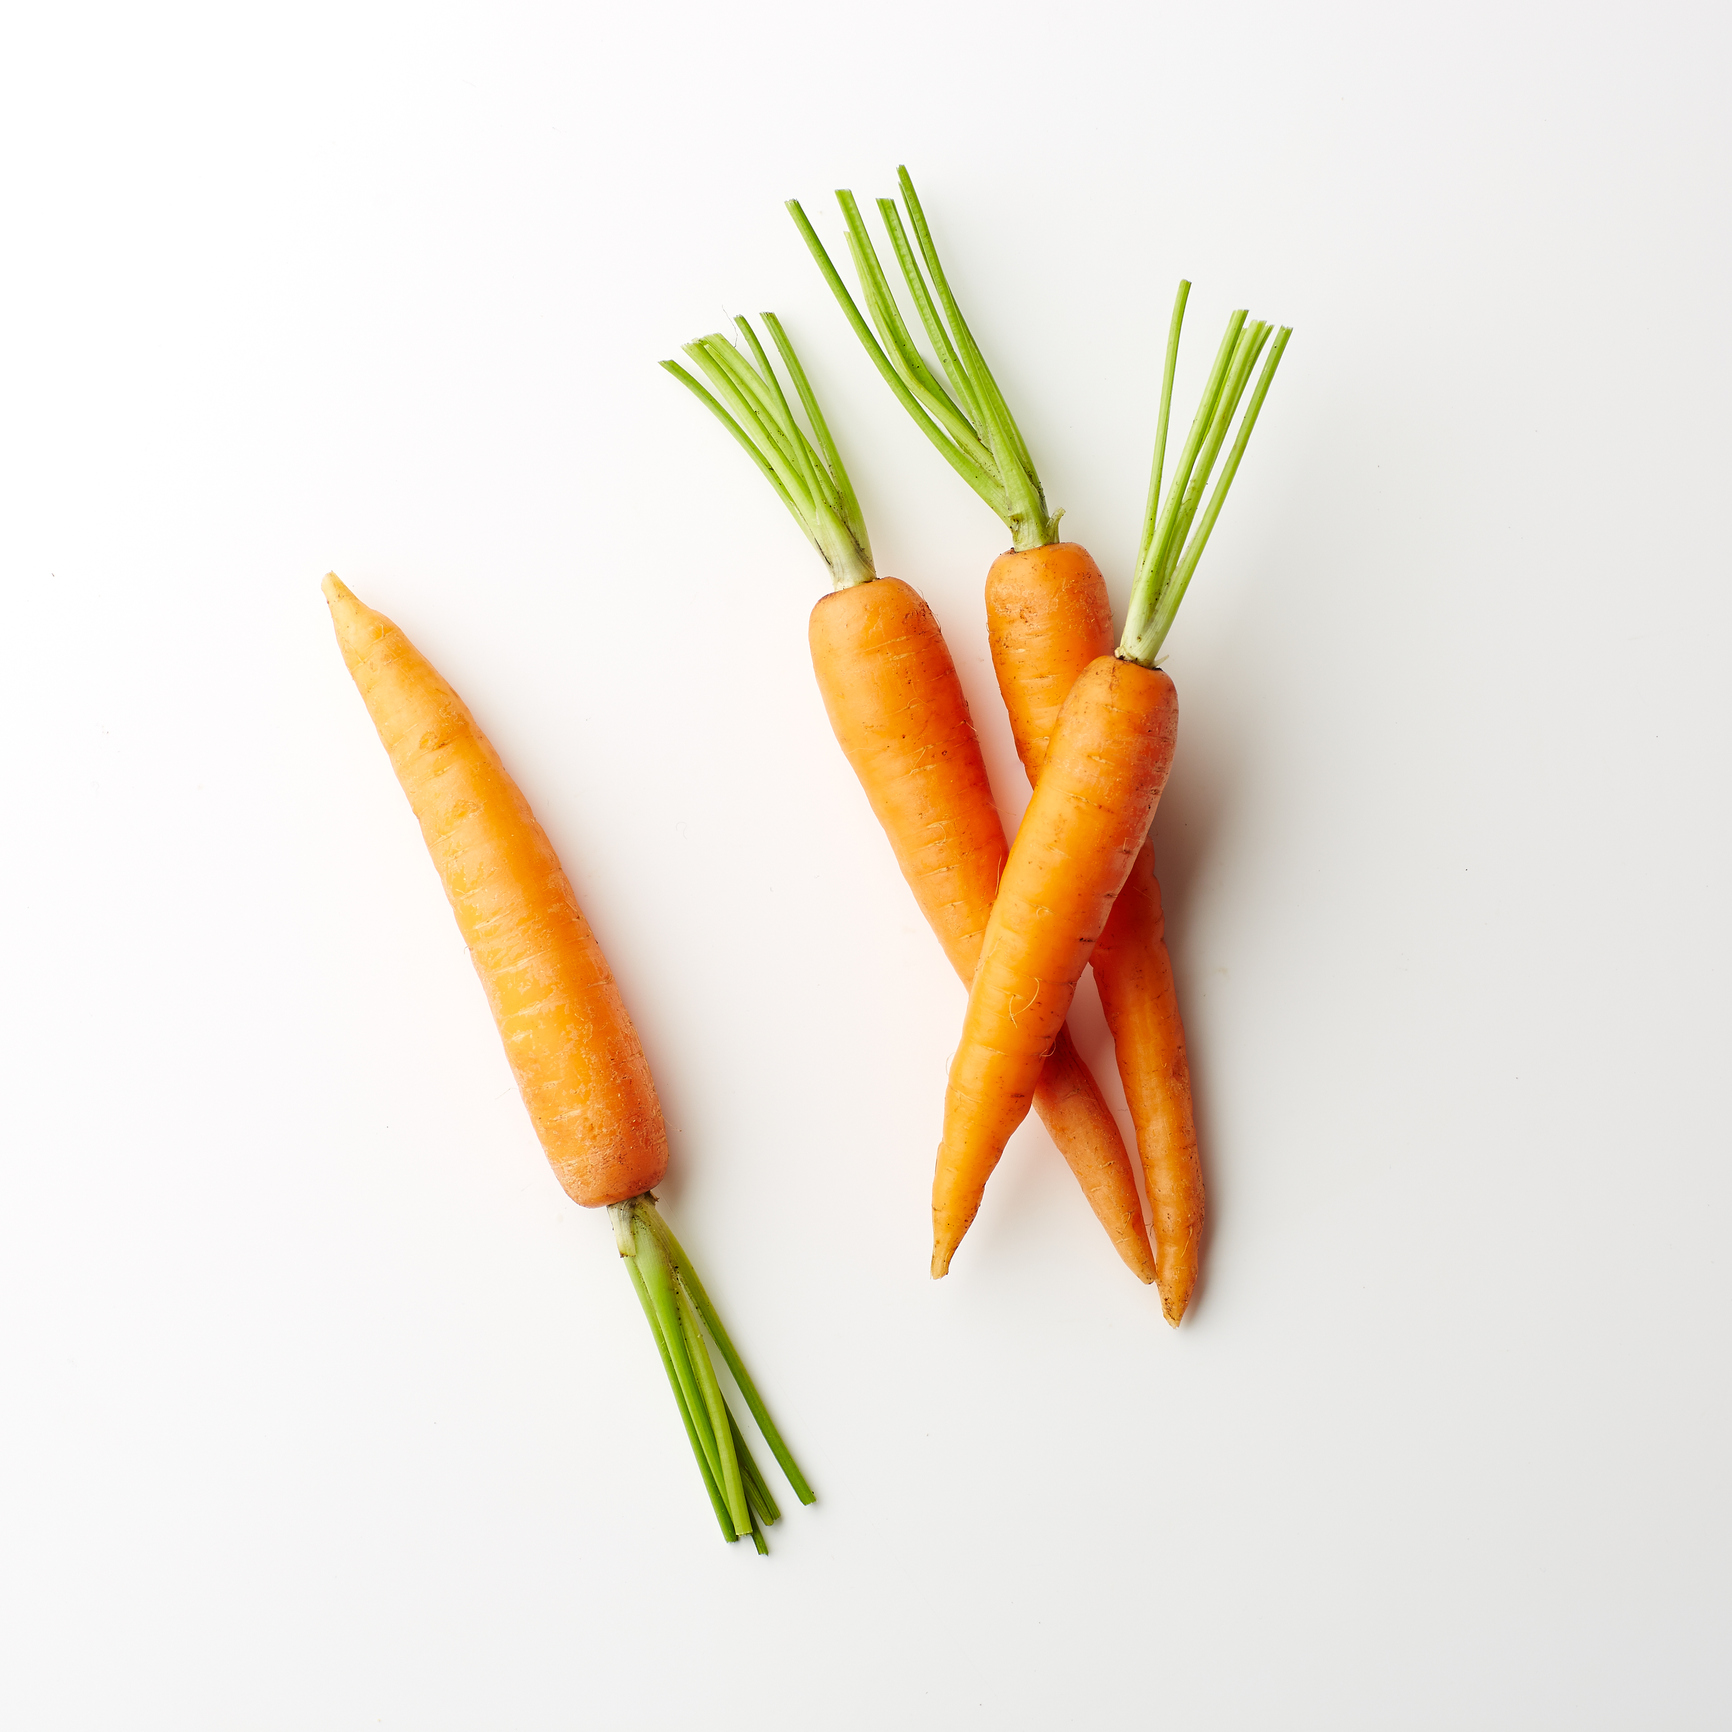 Морковь Витаминная 6 Описание Сорта Фото Отзывы